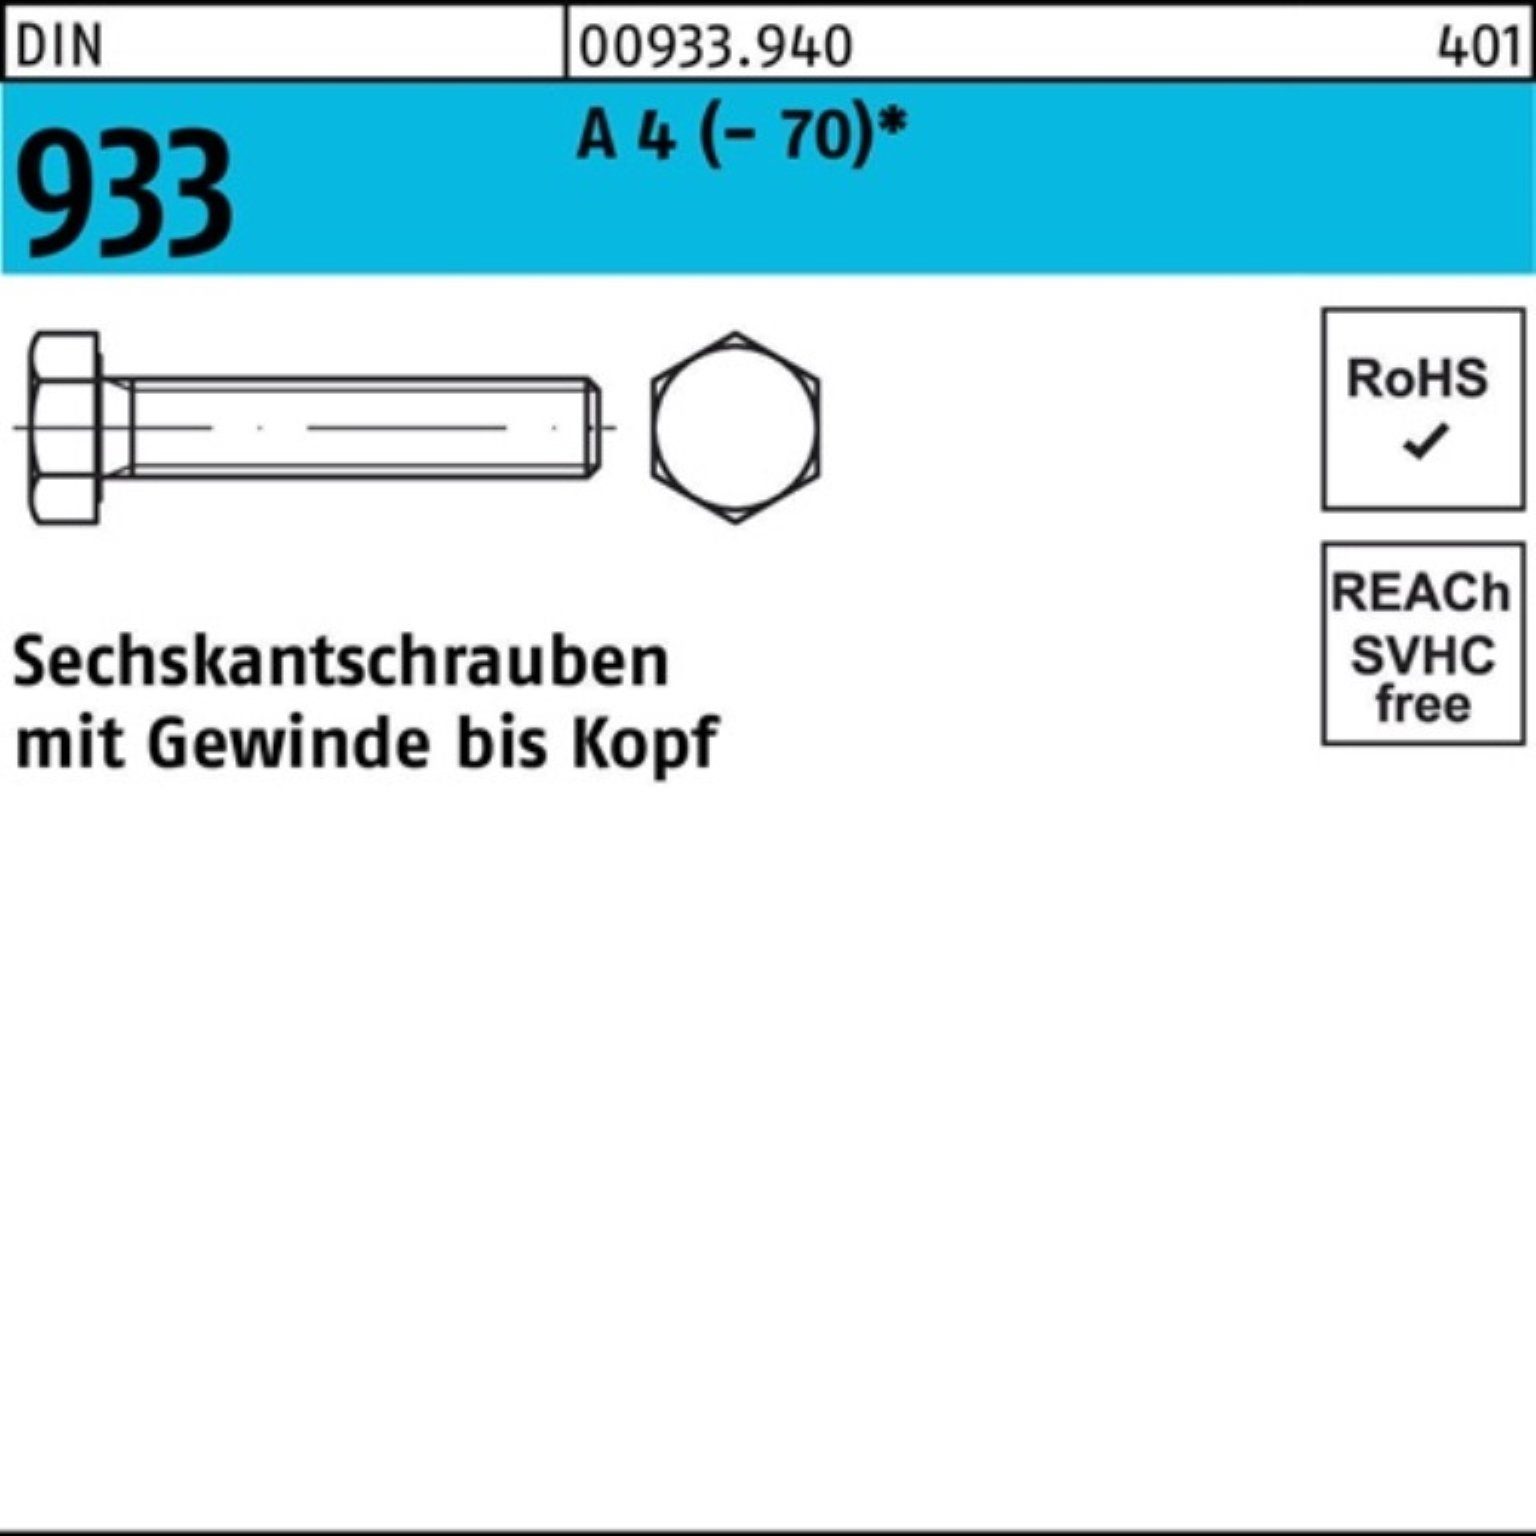 Reyher Sechskantschraube 100er (70) Pack 100 D 55 933 Stück Sechskantschraube M6x VG A 4 DIN